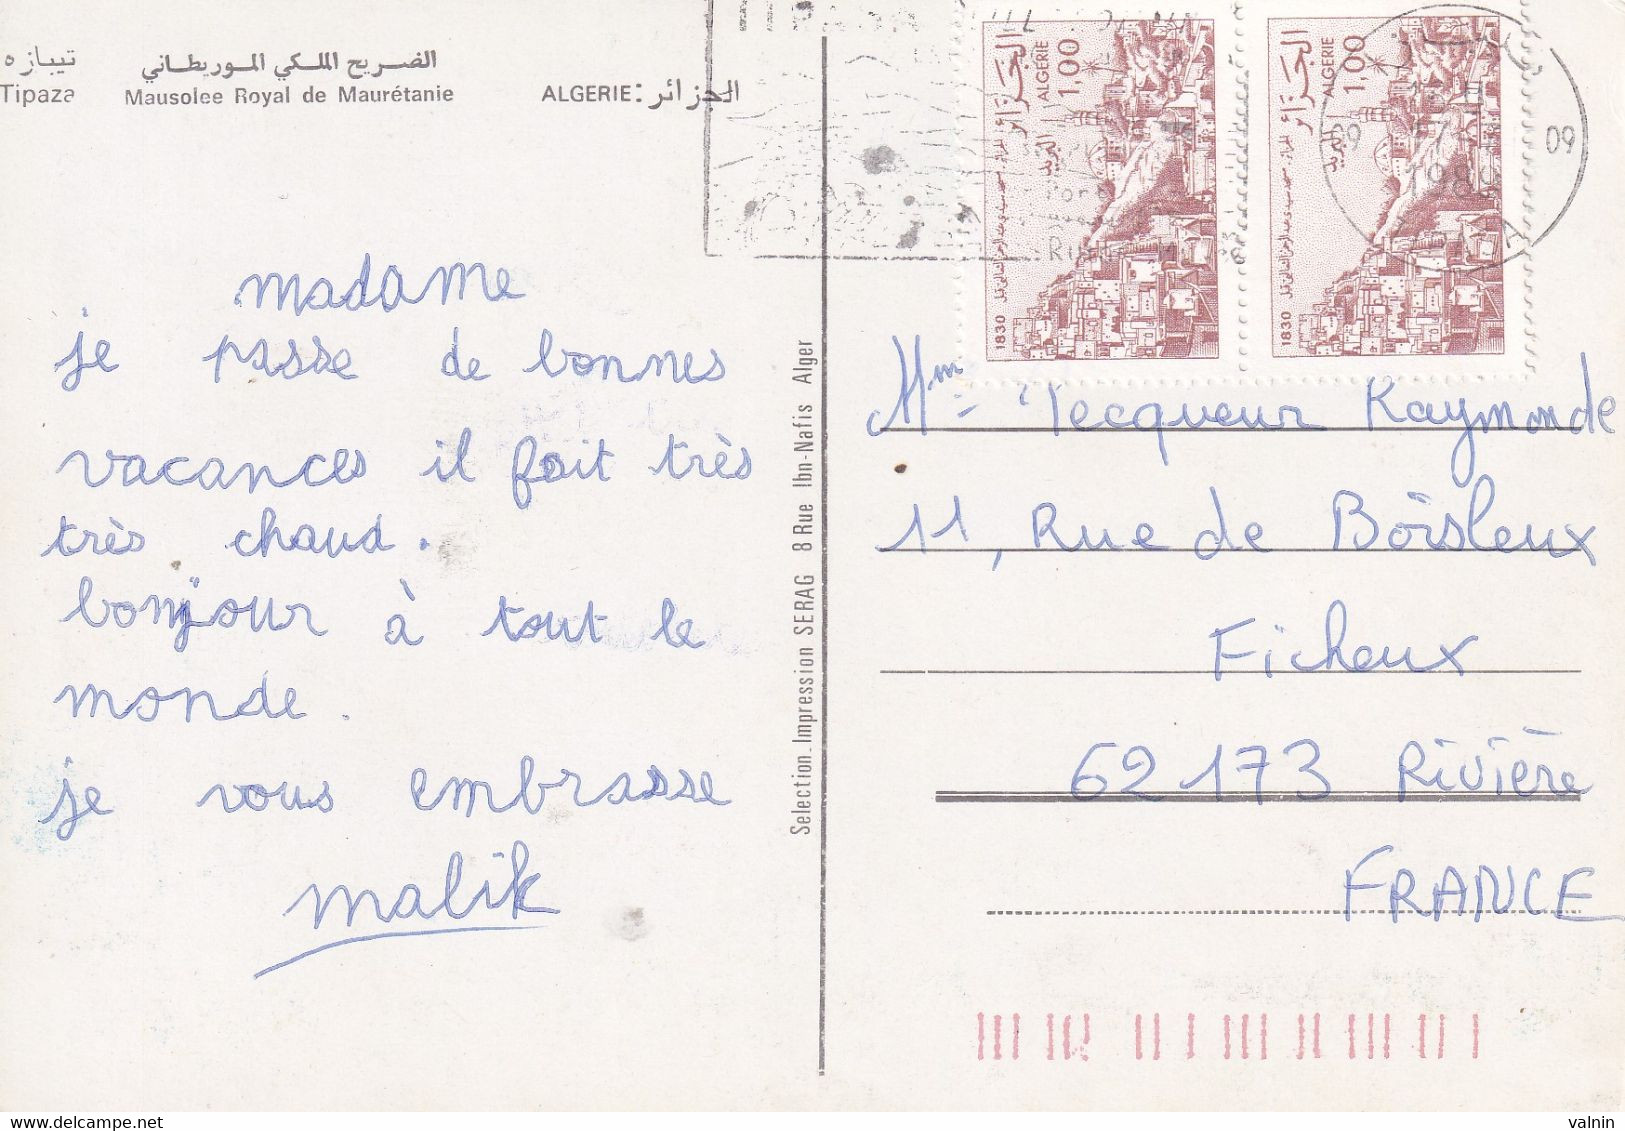 Tipaza Mausolée Royale - Mauritanie